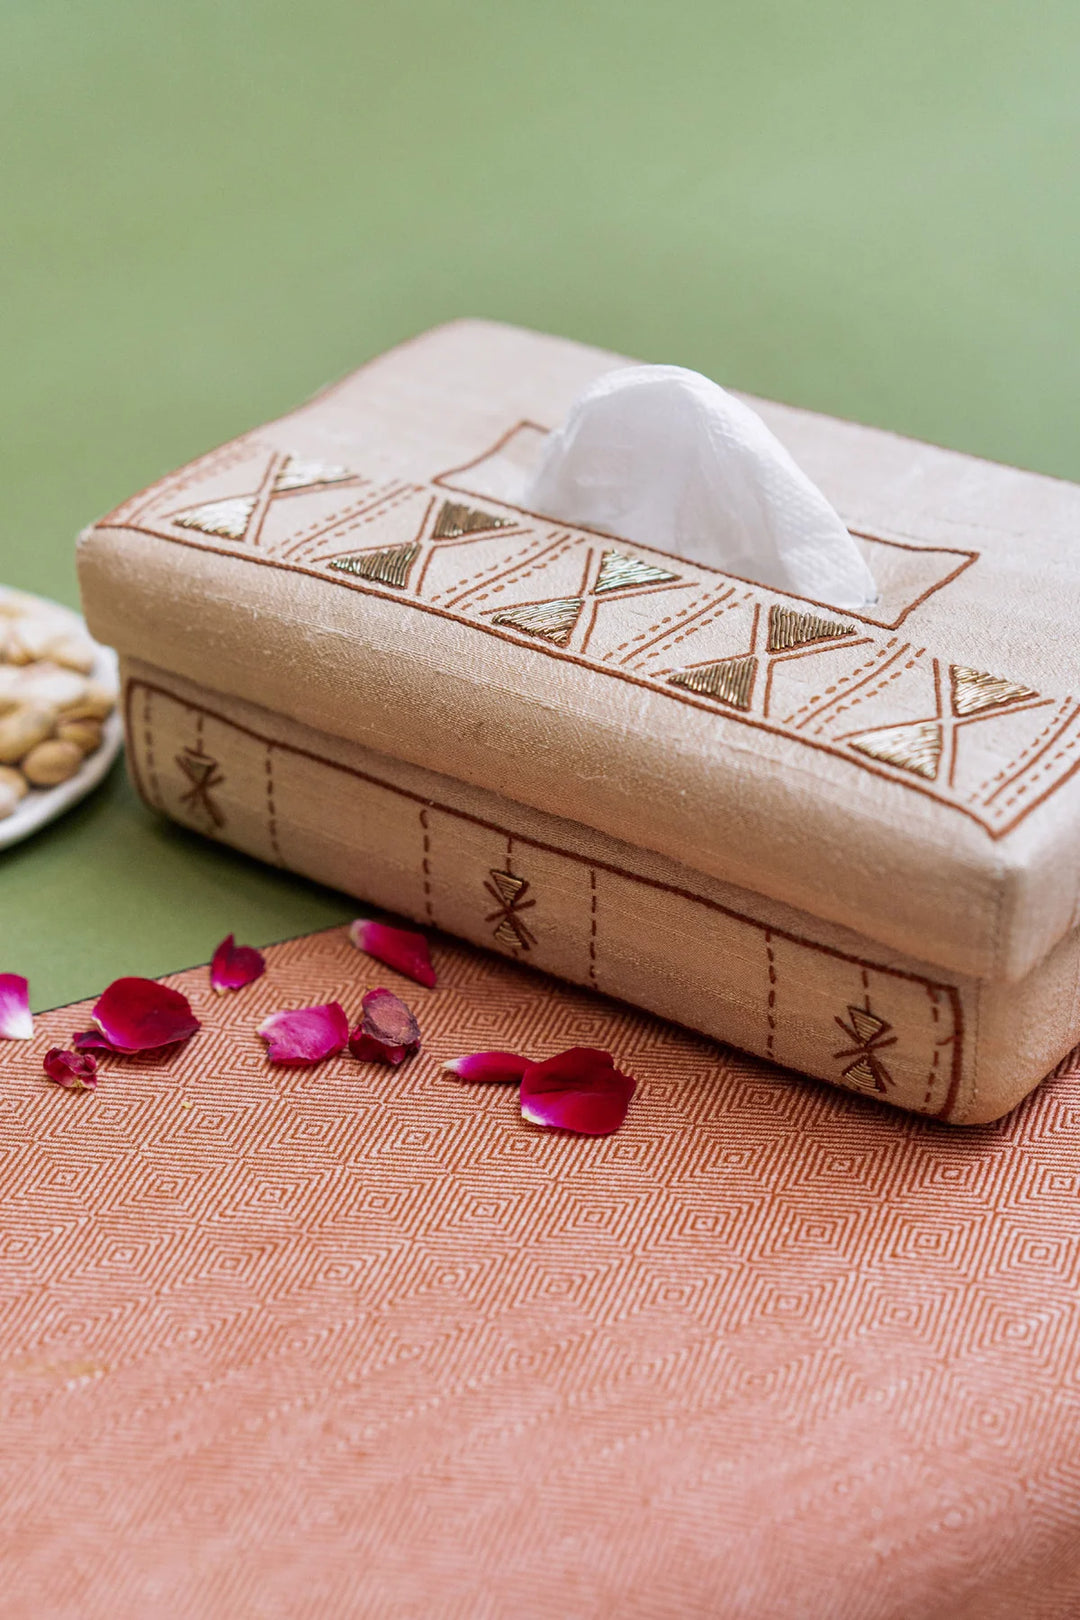 Silk Tissue Box with Tribal Designs | Ritmo de Tambor Handmade Tissue Box - Off White